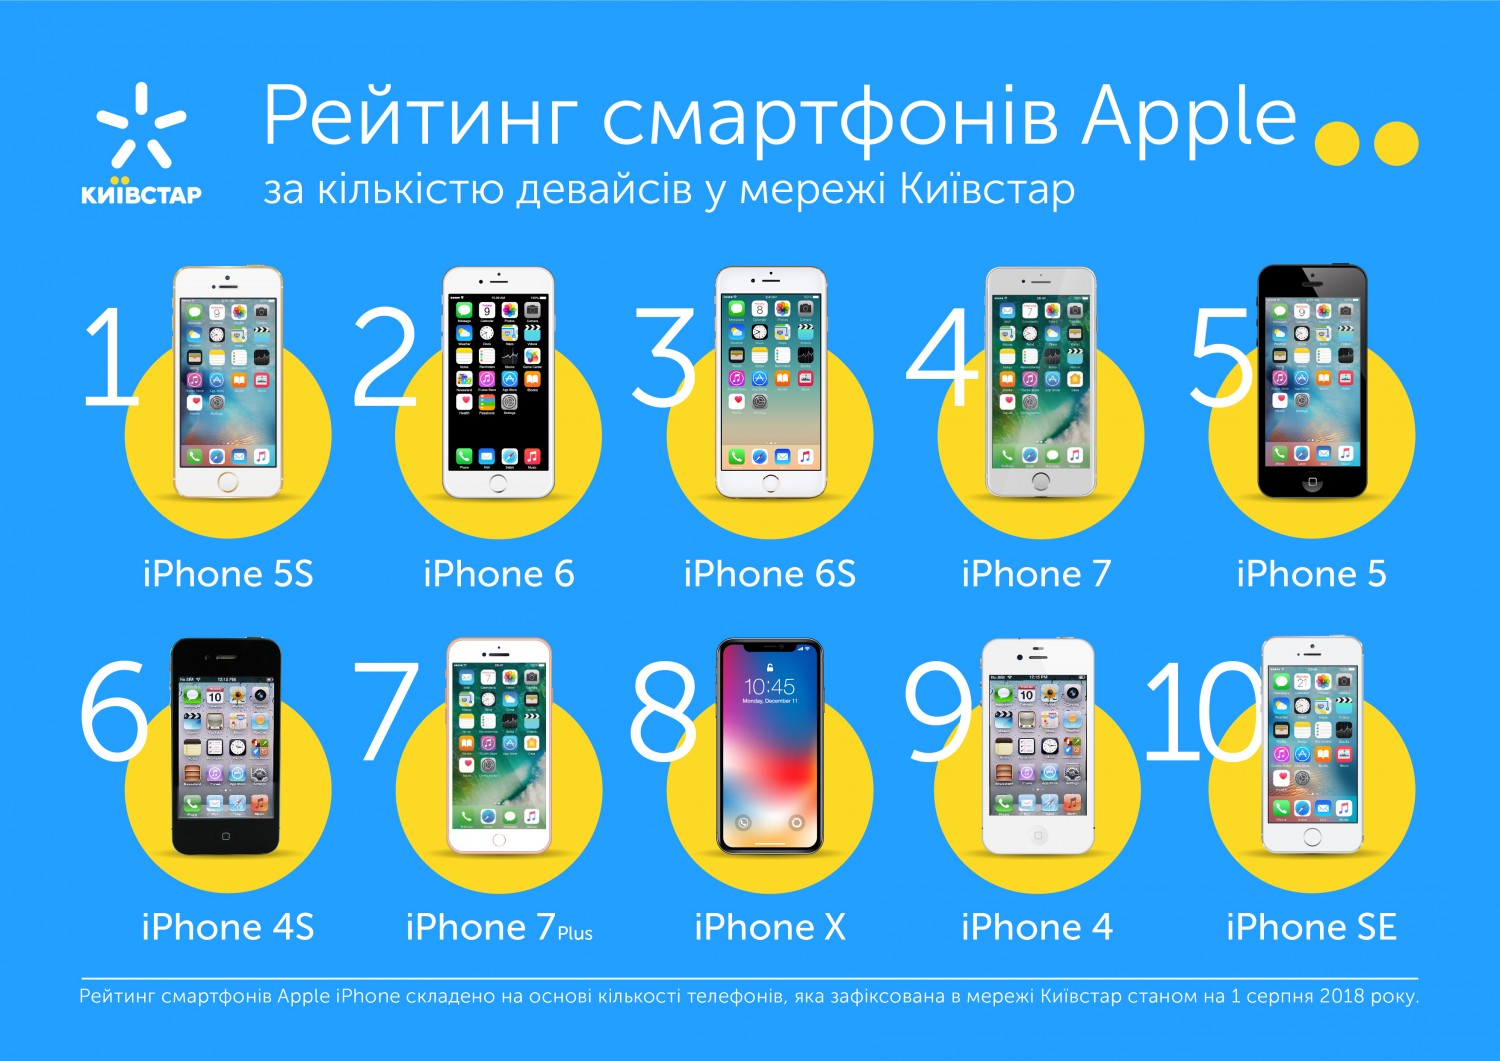 Кількість смартфонів Apple у мережі Київстар зросла майже на третину